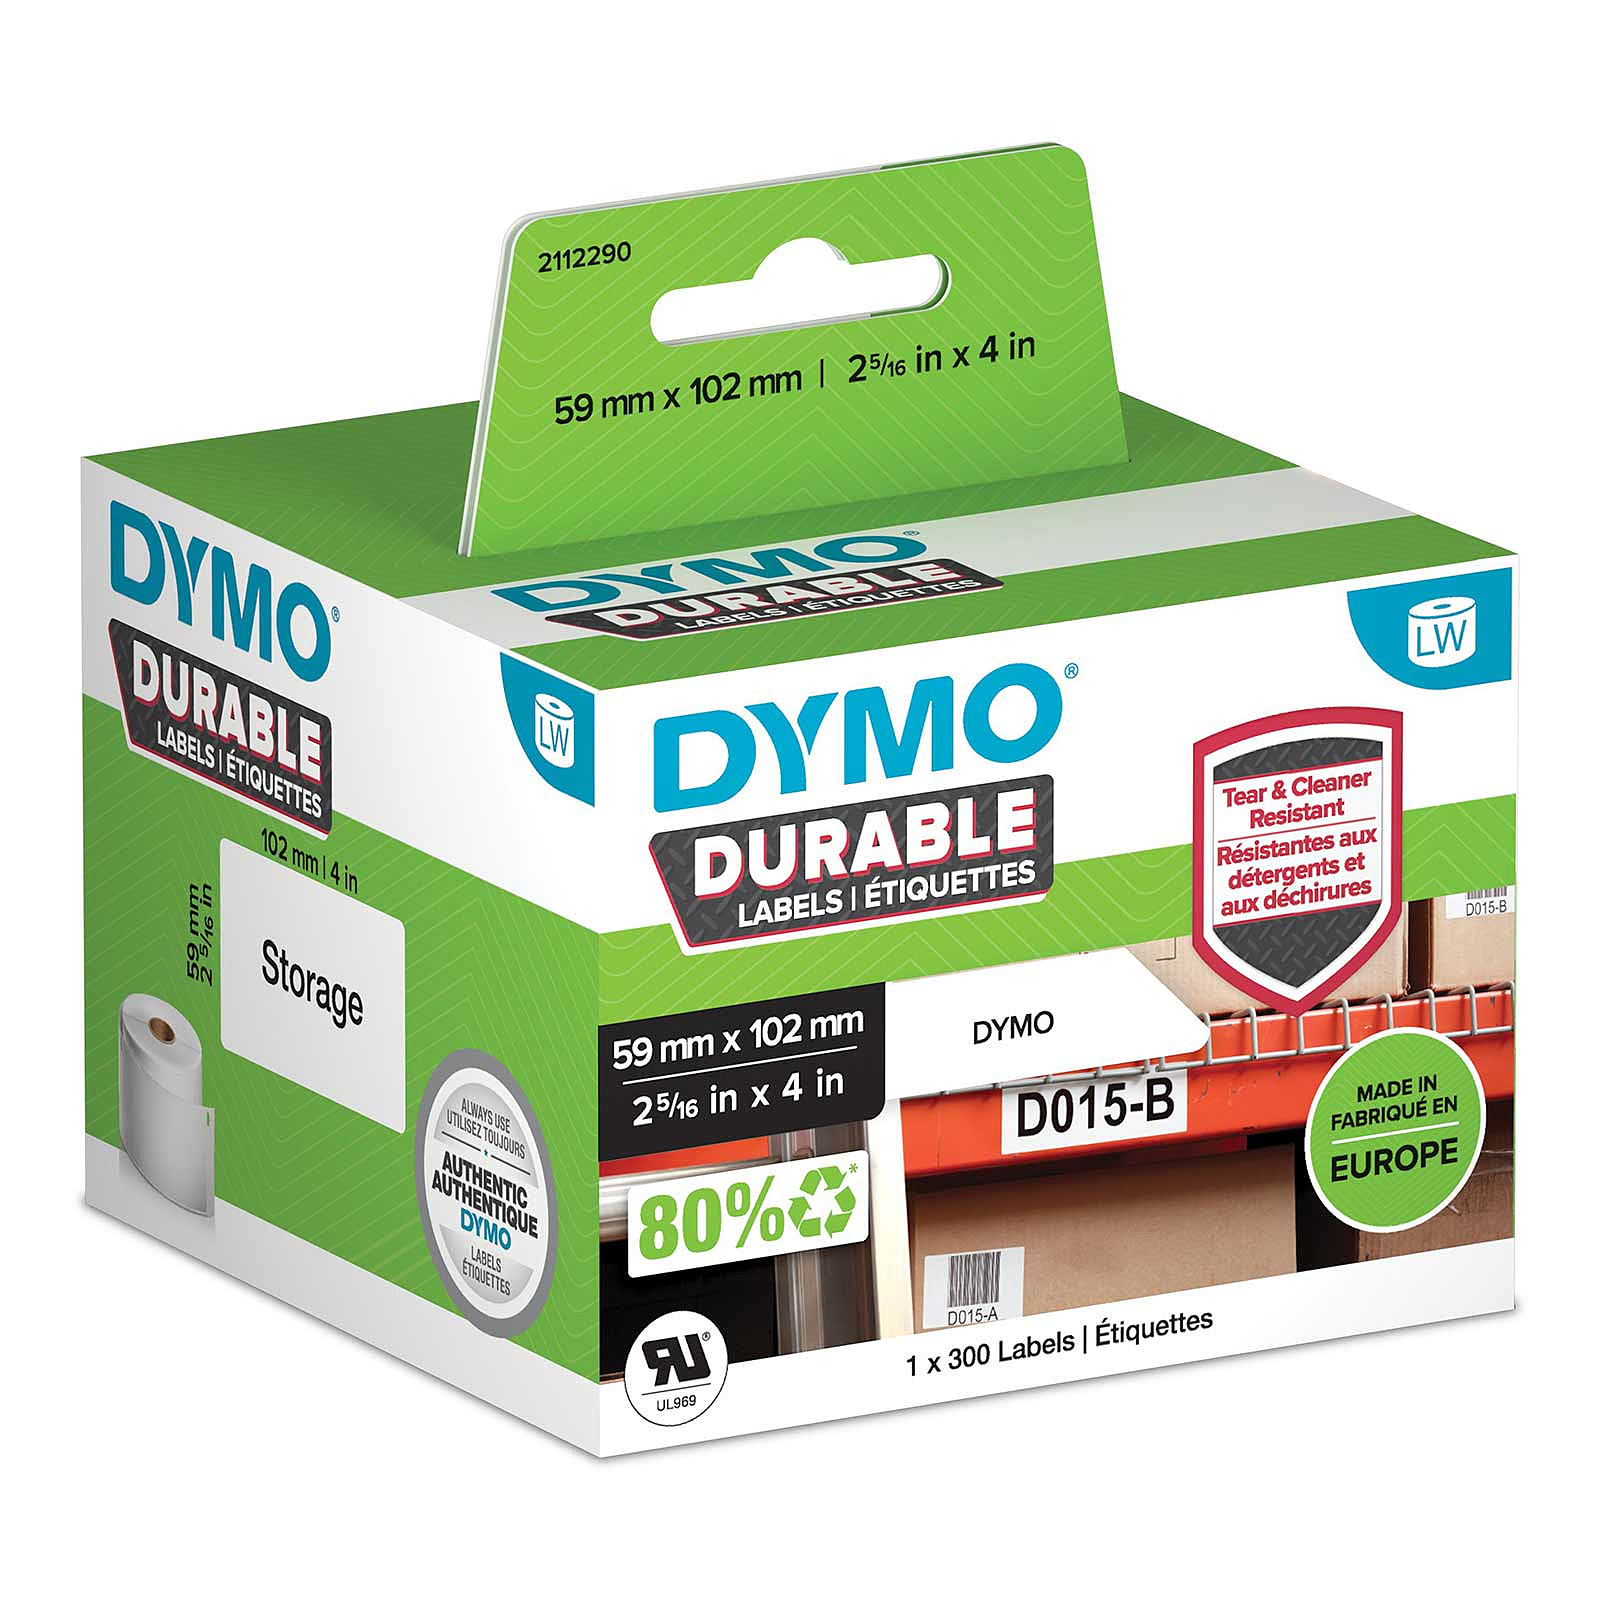 DYMO LW Rouleau d'etiquettes universelles permanentes blanches - 102 x 59 mm - Papier imprimante DYMO